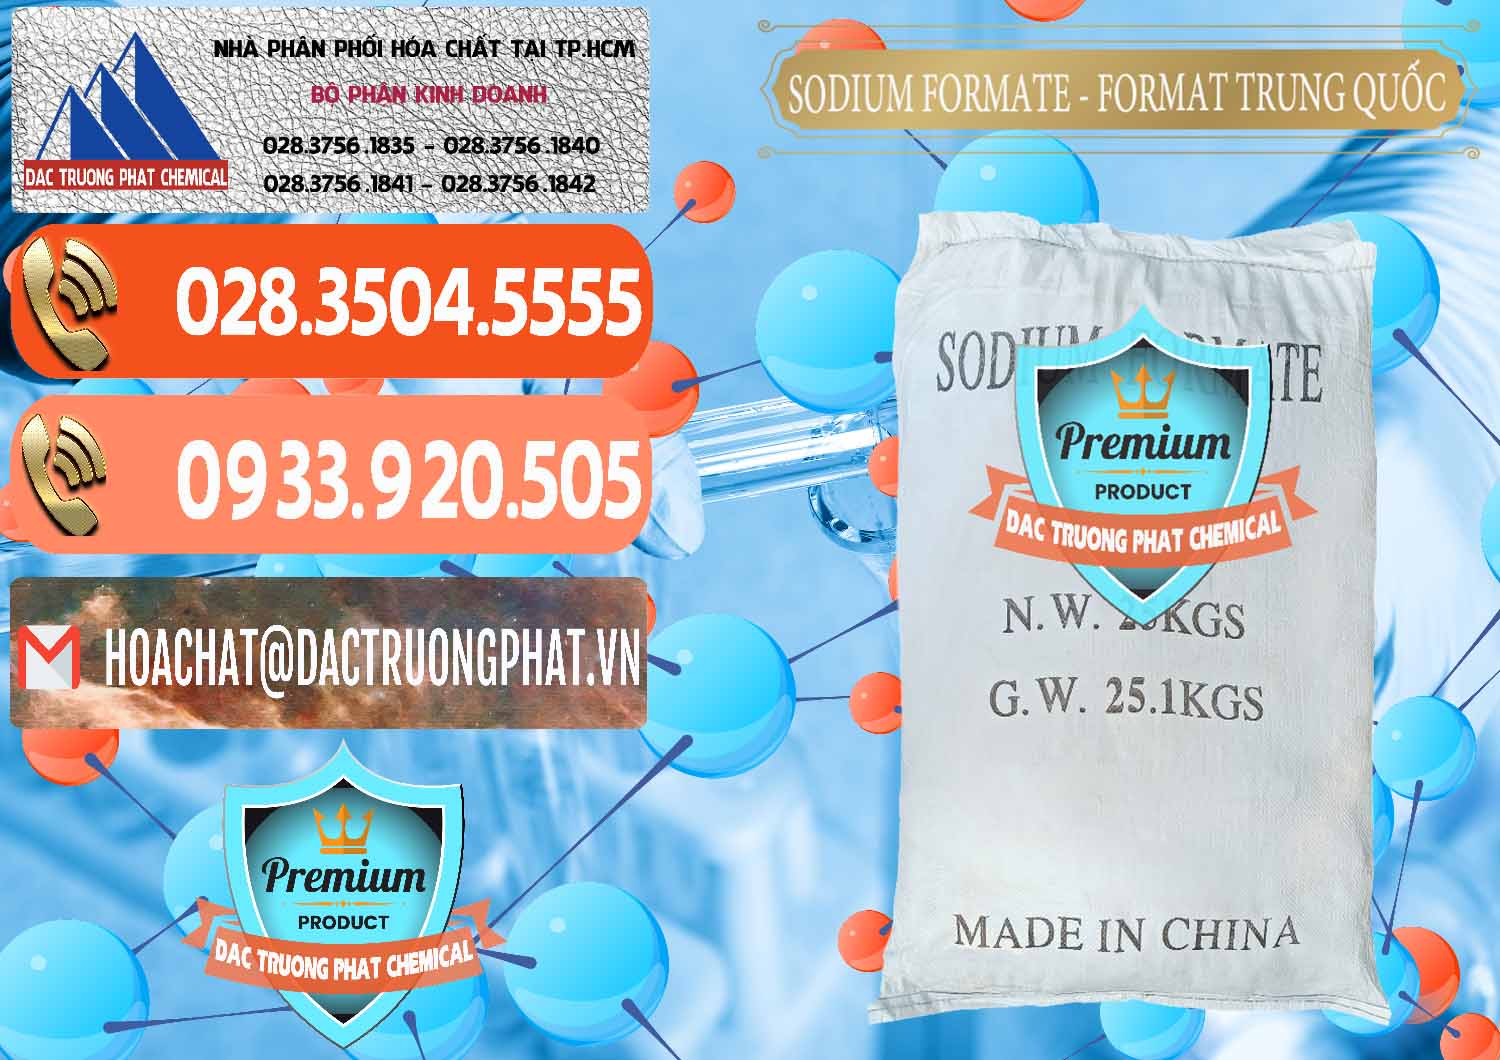 Công ty chuyên bán ( cung ứng ) Sodium Formate - Natri Format Trung Quốc China - 0142 - Nơi chuyên cung ứng & phân phối hóa chất tại TP.HCM - hoachatmientay.com